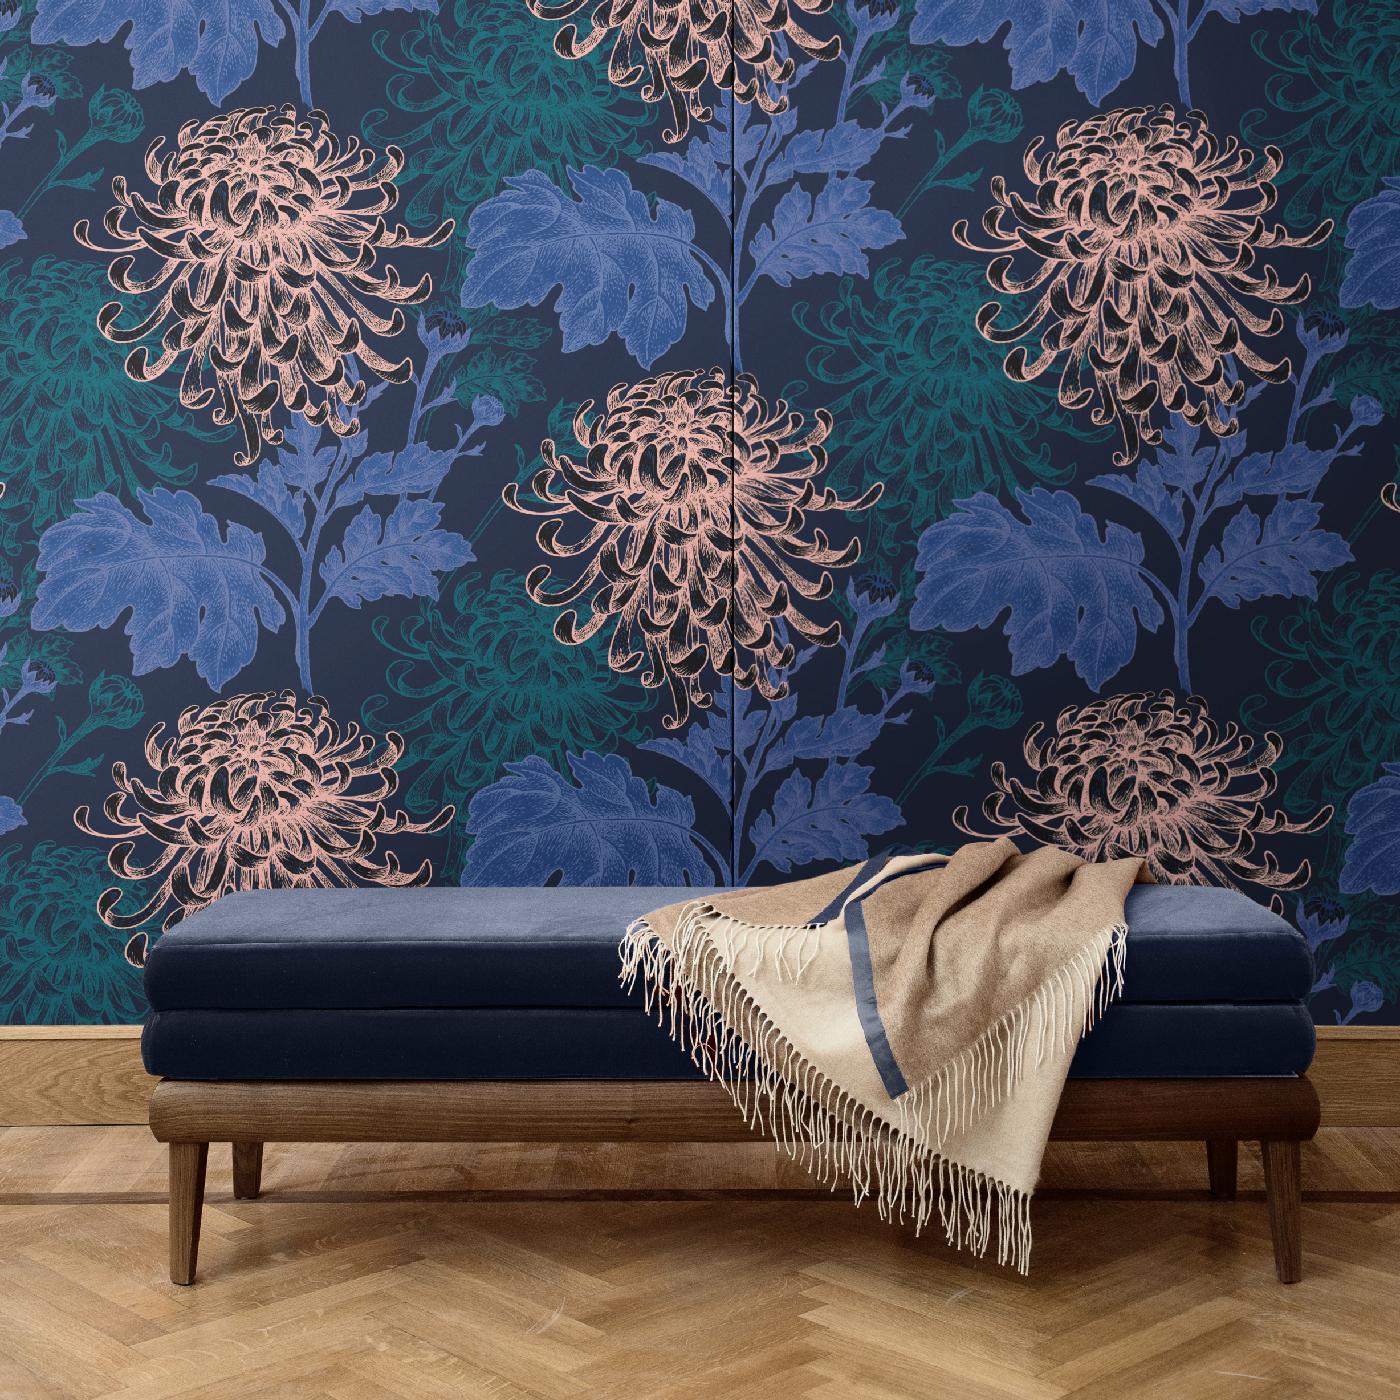 Als Teil der Mixed Dahlia-Kollektion bietet diese prächtige Wandbespannung eine exquisite Gegenüberstellung von Dahlien und Blättern, die drei verschiedene Farbtöne auf einem dramatischen dunklen Hintergrund zeigen. Diese einzigartige Dekoration